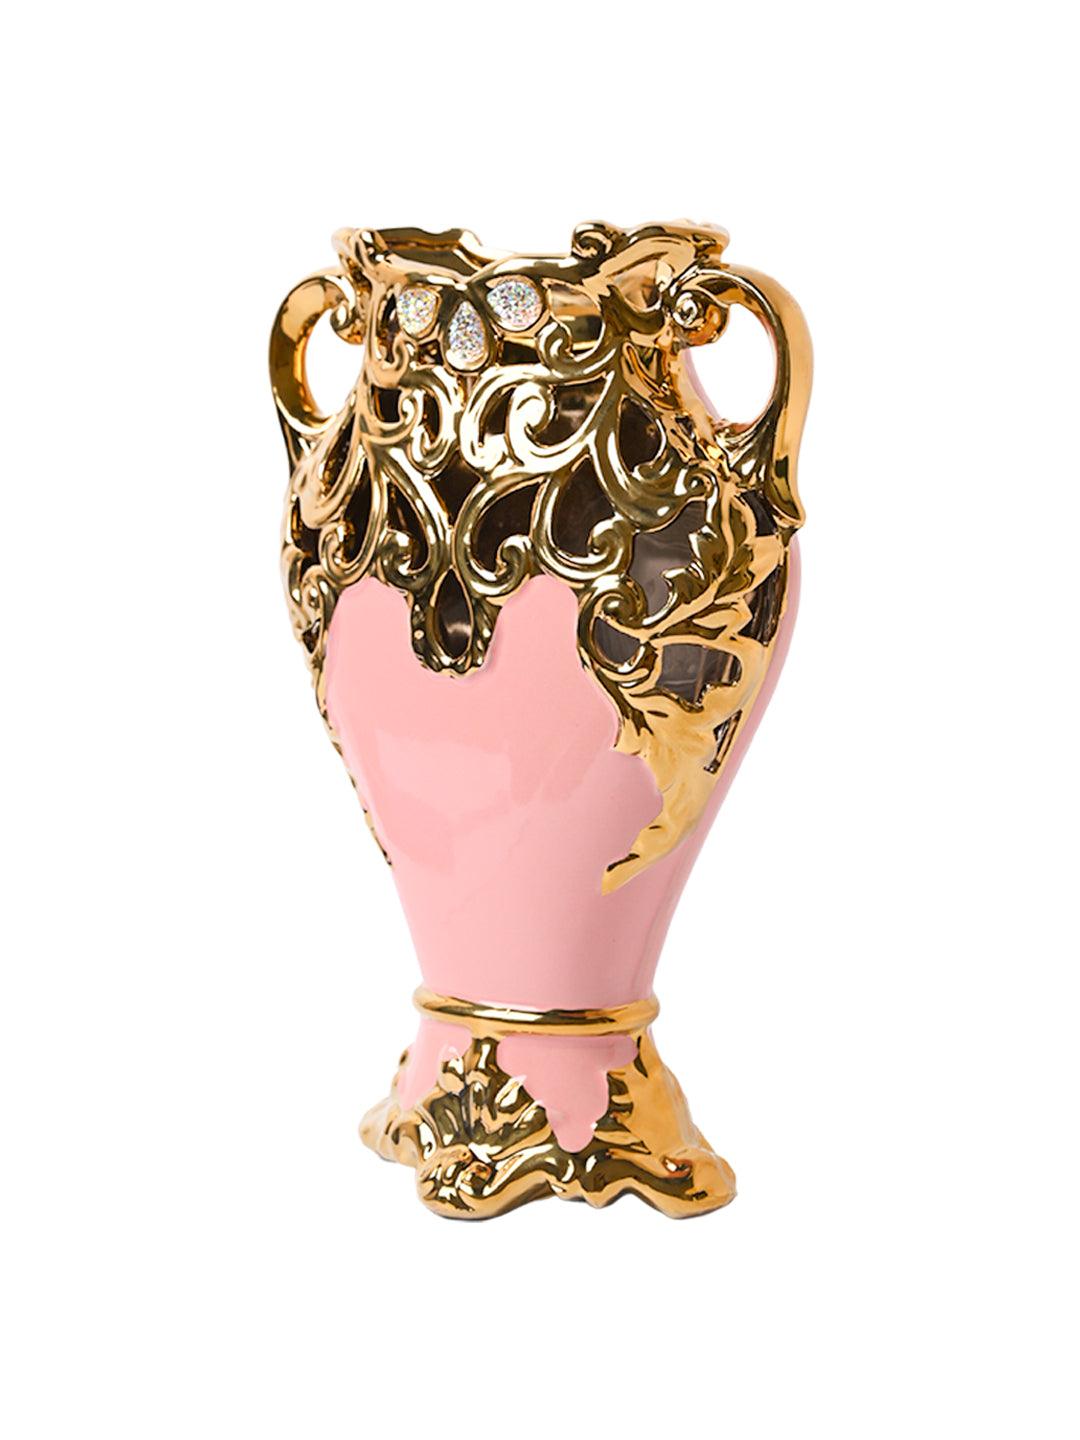 Ceramic Trophy Cup Vase - MARKET99